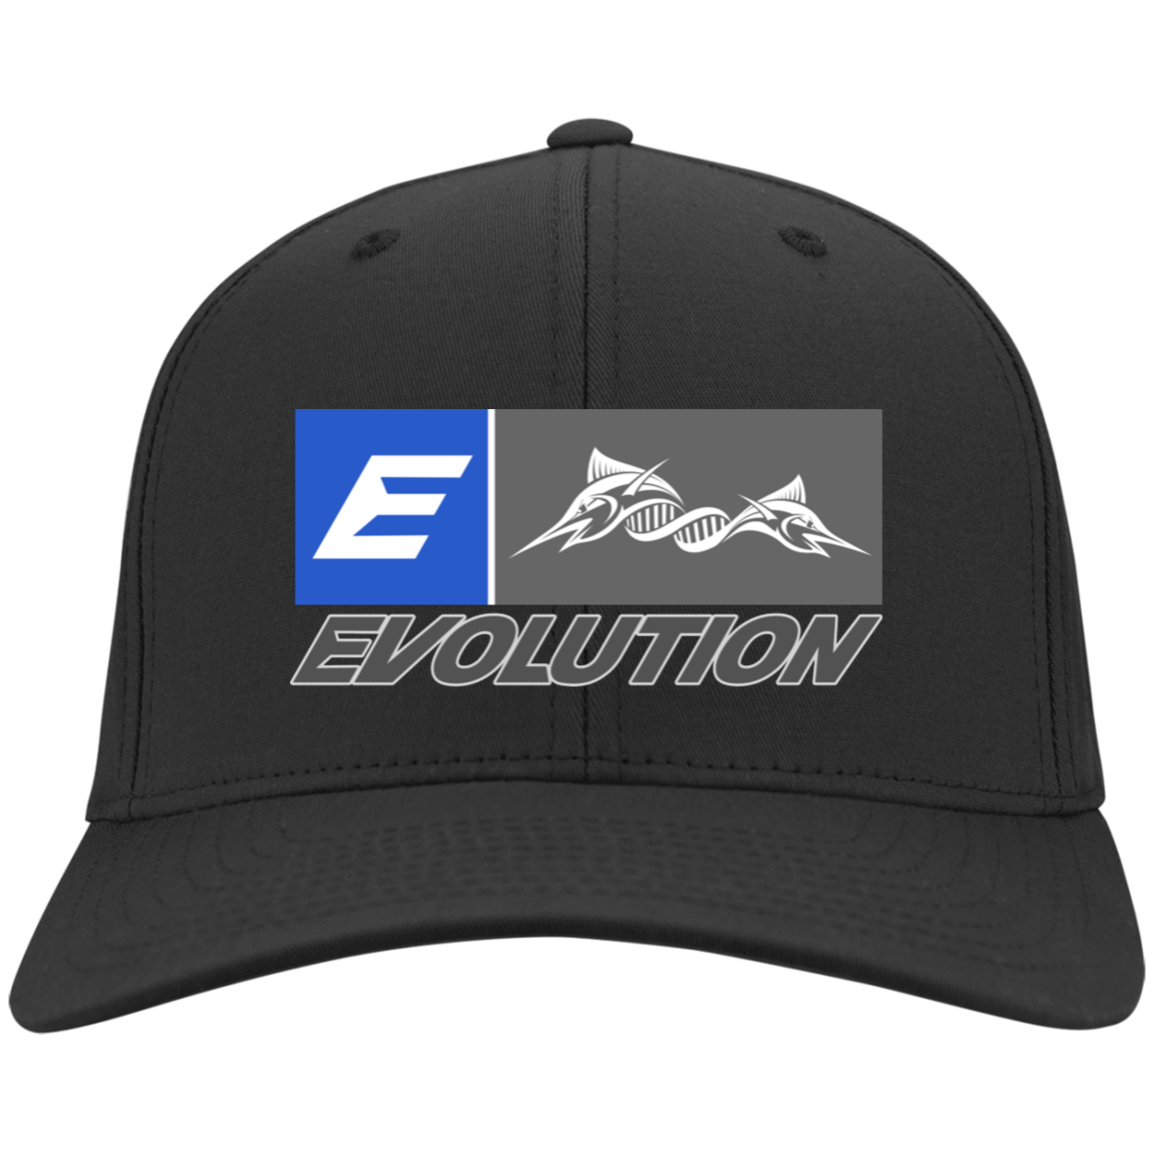 Embroidered Evolution Hat - Evolution Lures